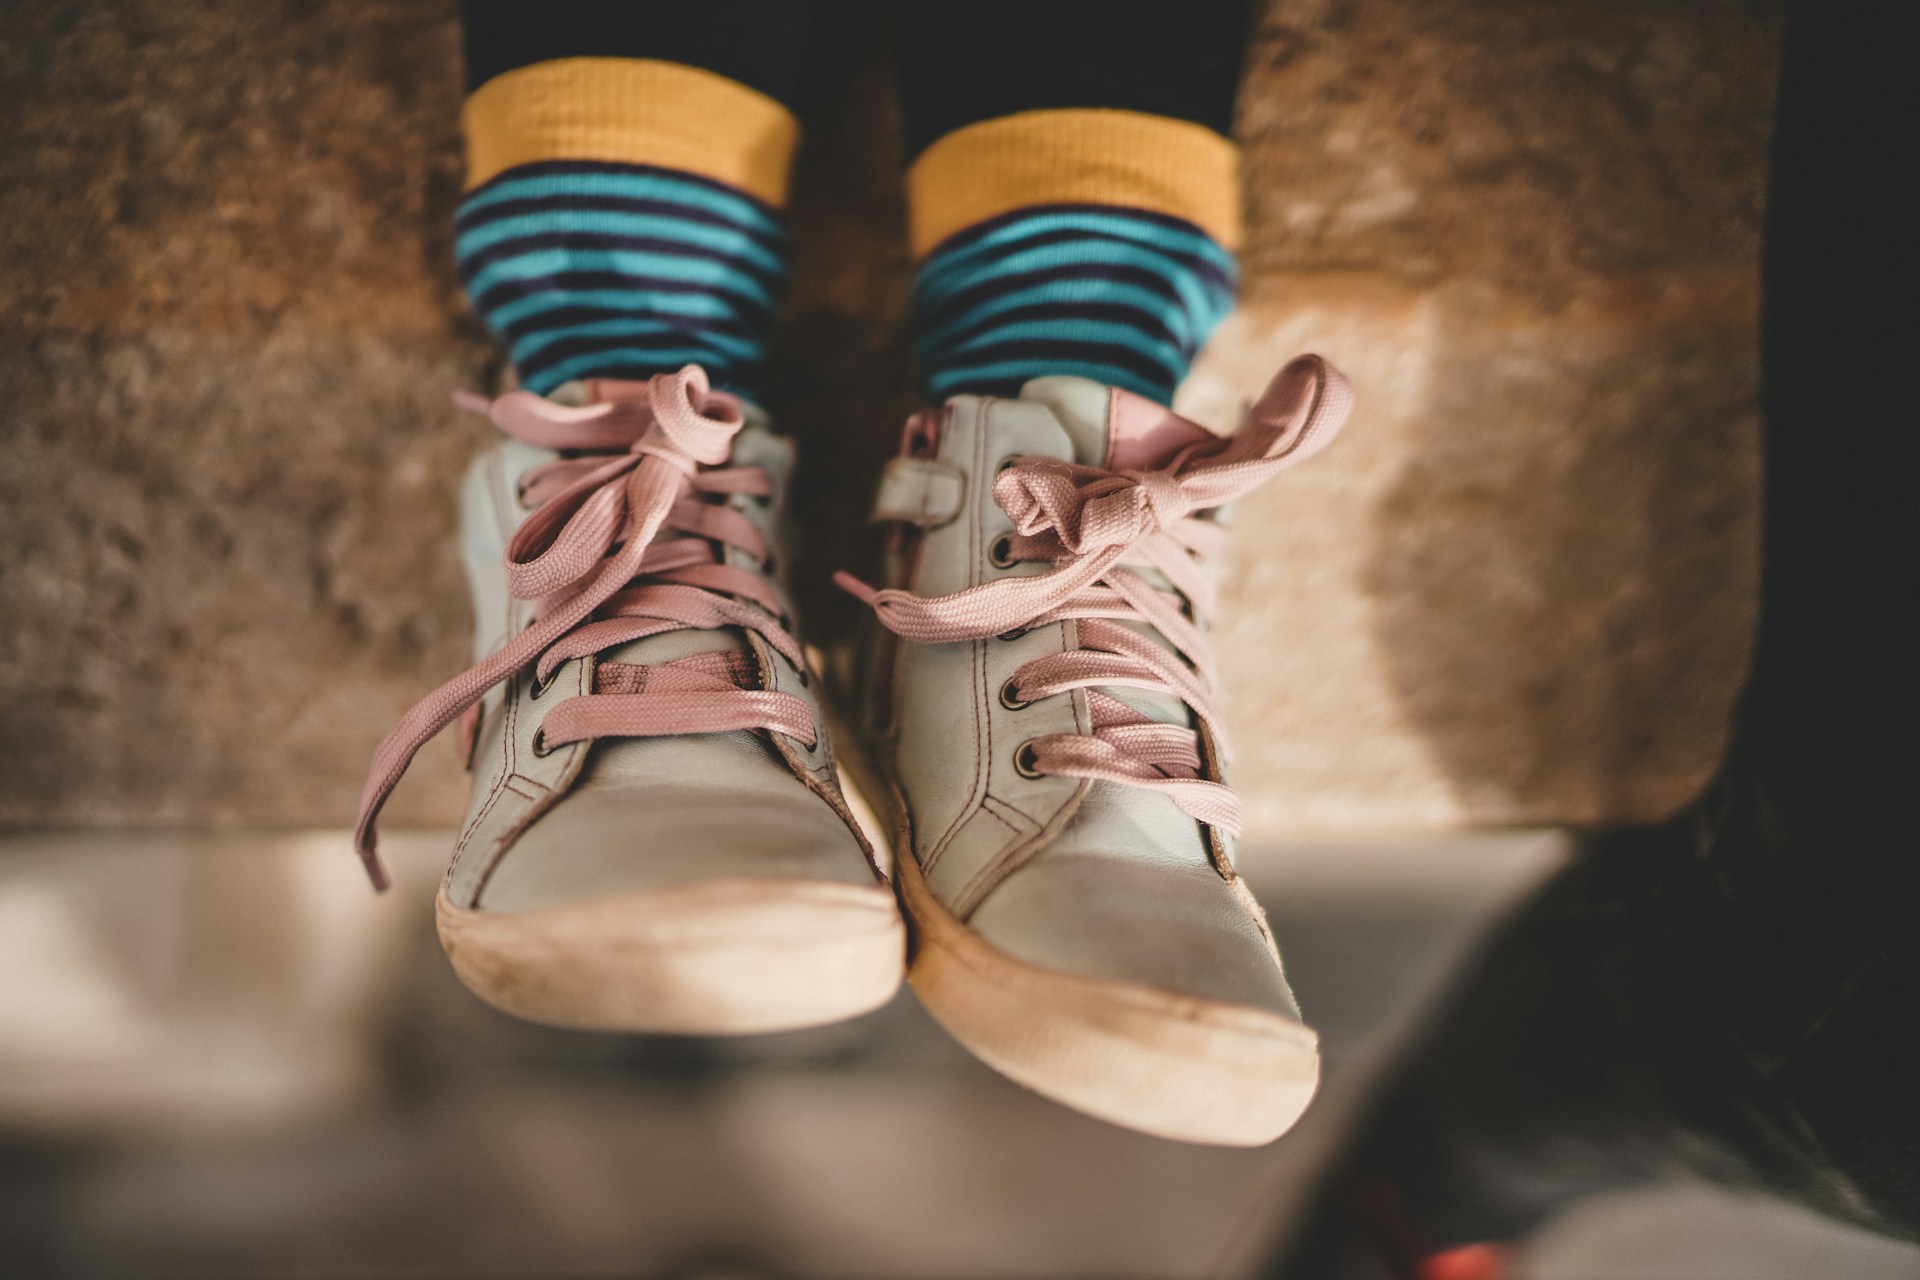 Zapatos de niño. Foto de Zan Lazarevic en Unsplash